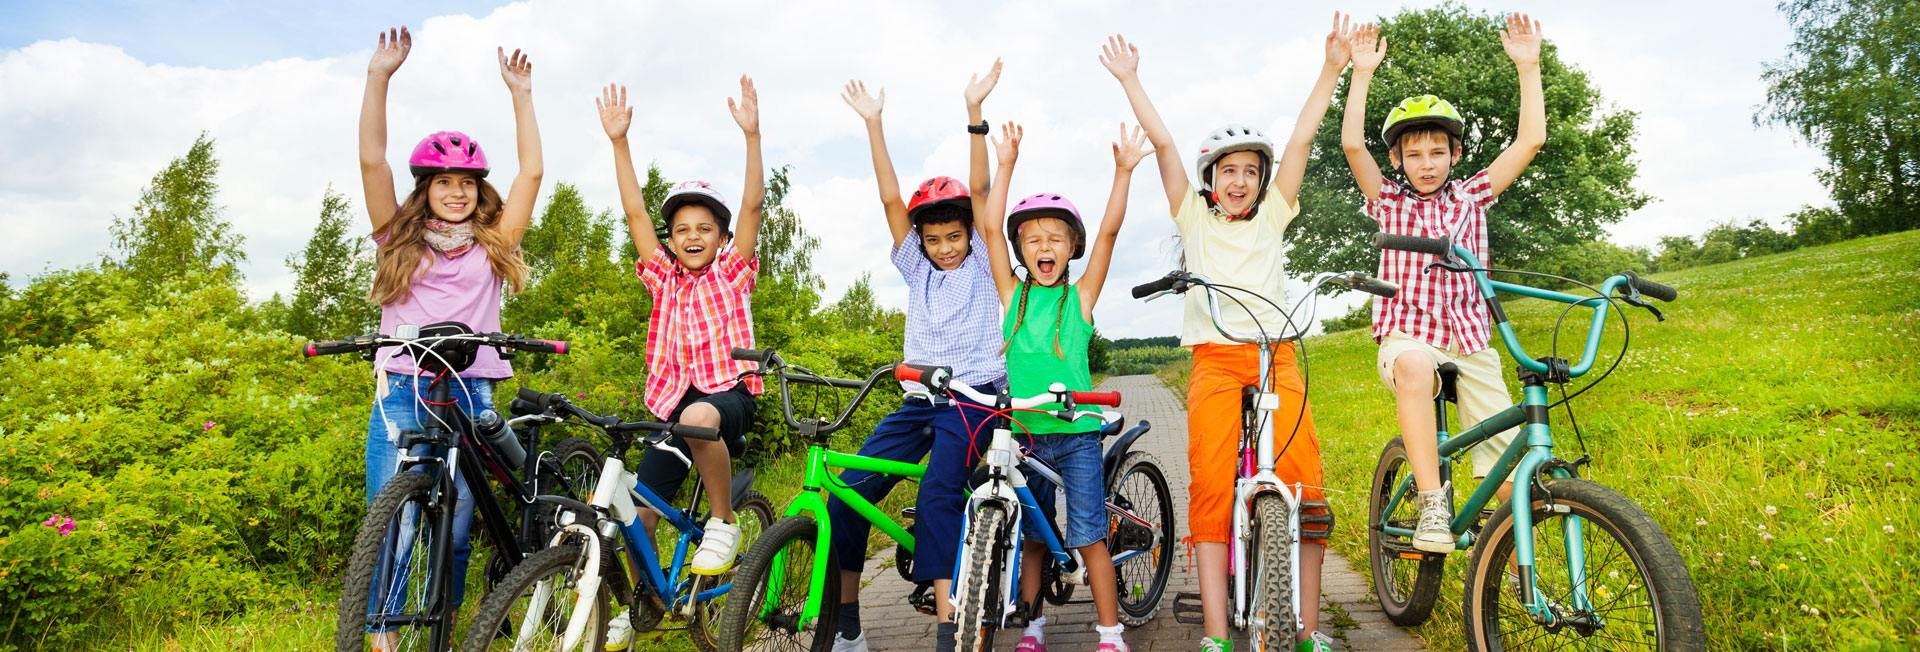 Учимся на летних каникулах. Подросток на велосипеде. Дети с велосипедом. Лето дети велосипед.